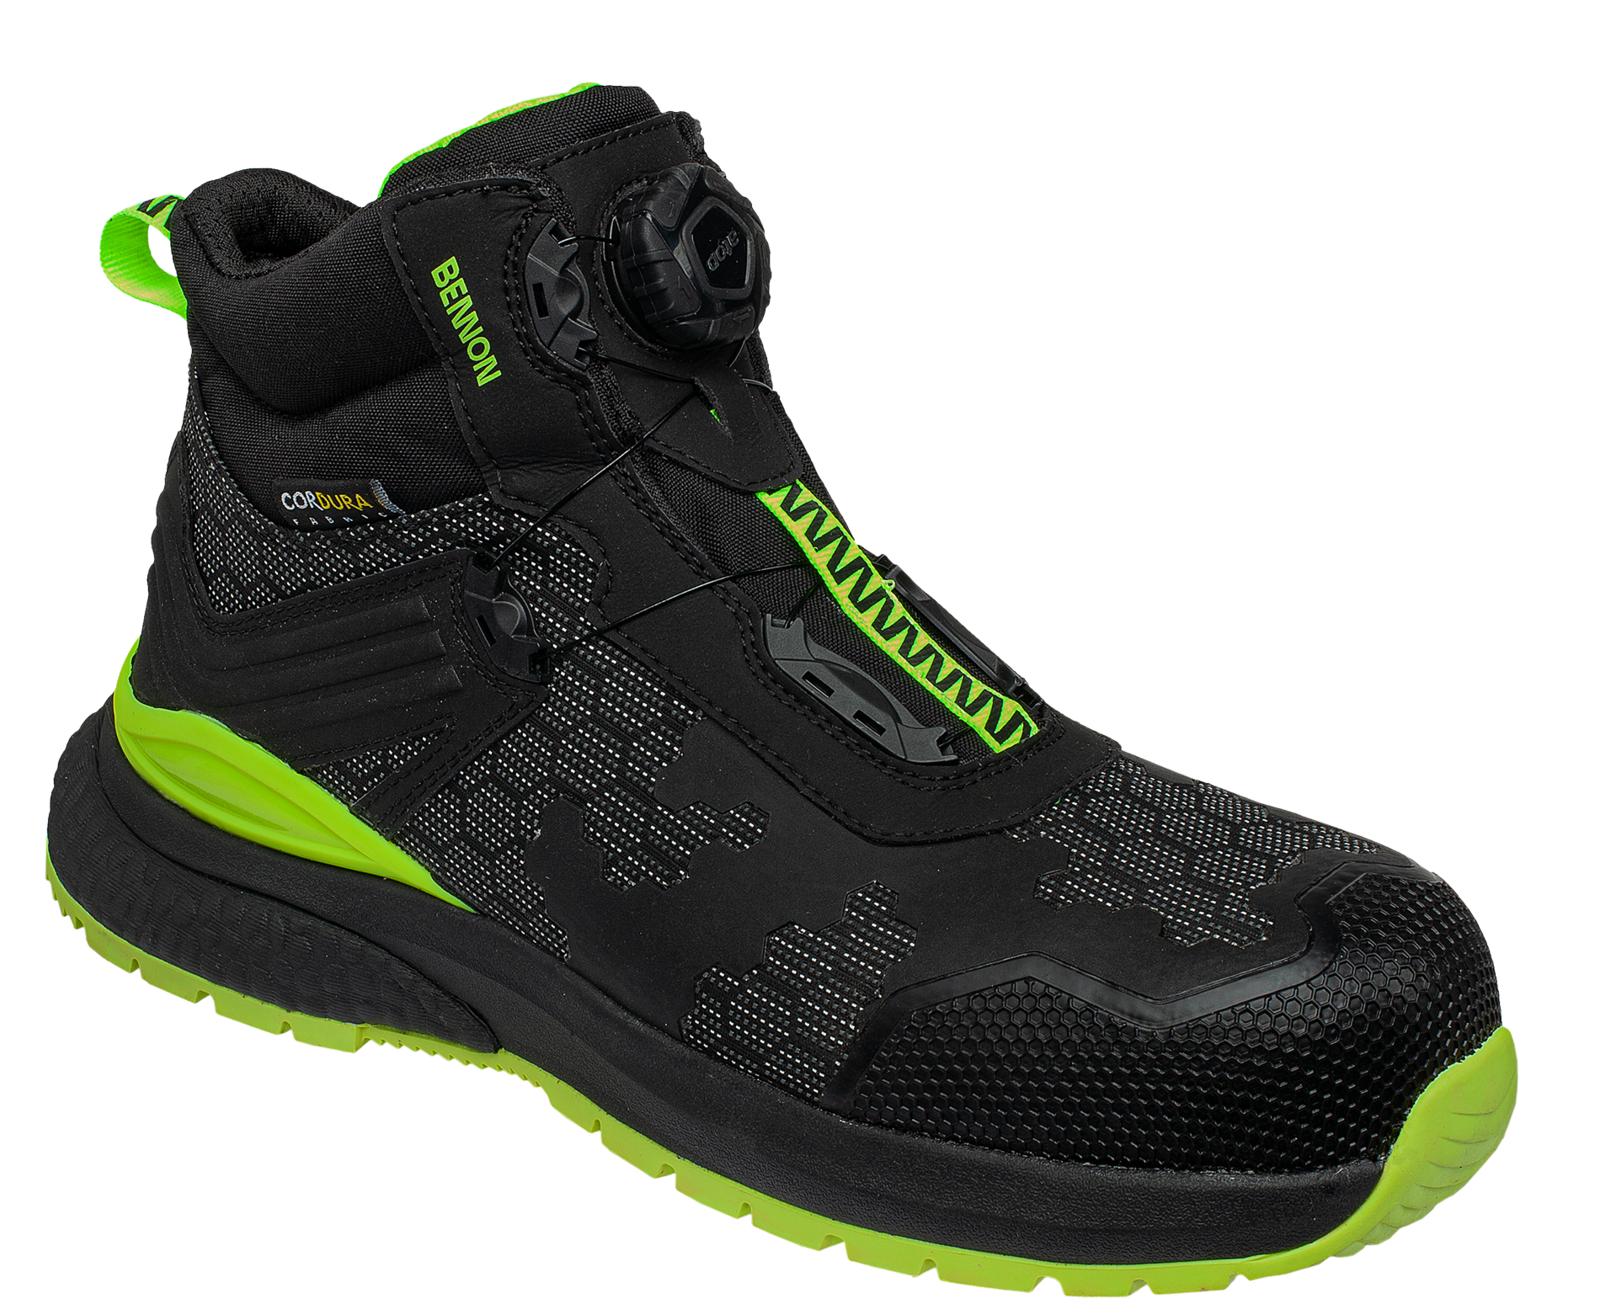 Bezpečnostná obuv Bennon Predator S3 ESD High - veľkosť: 47, farba: čierna/zelená